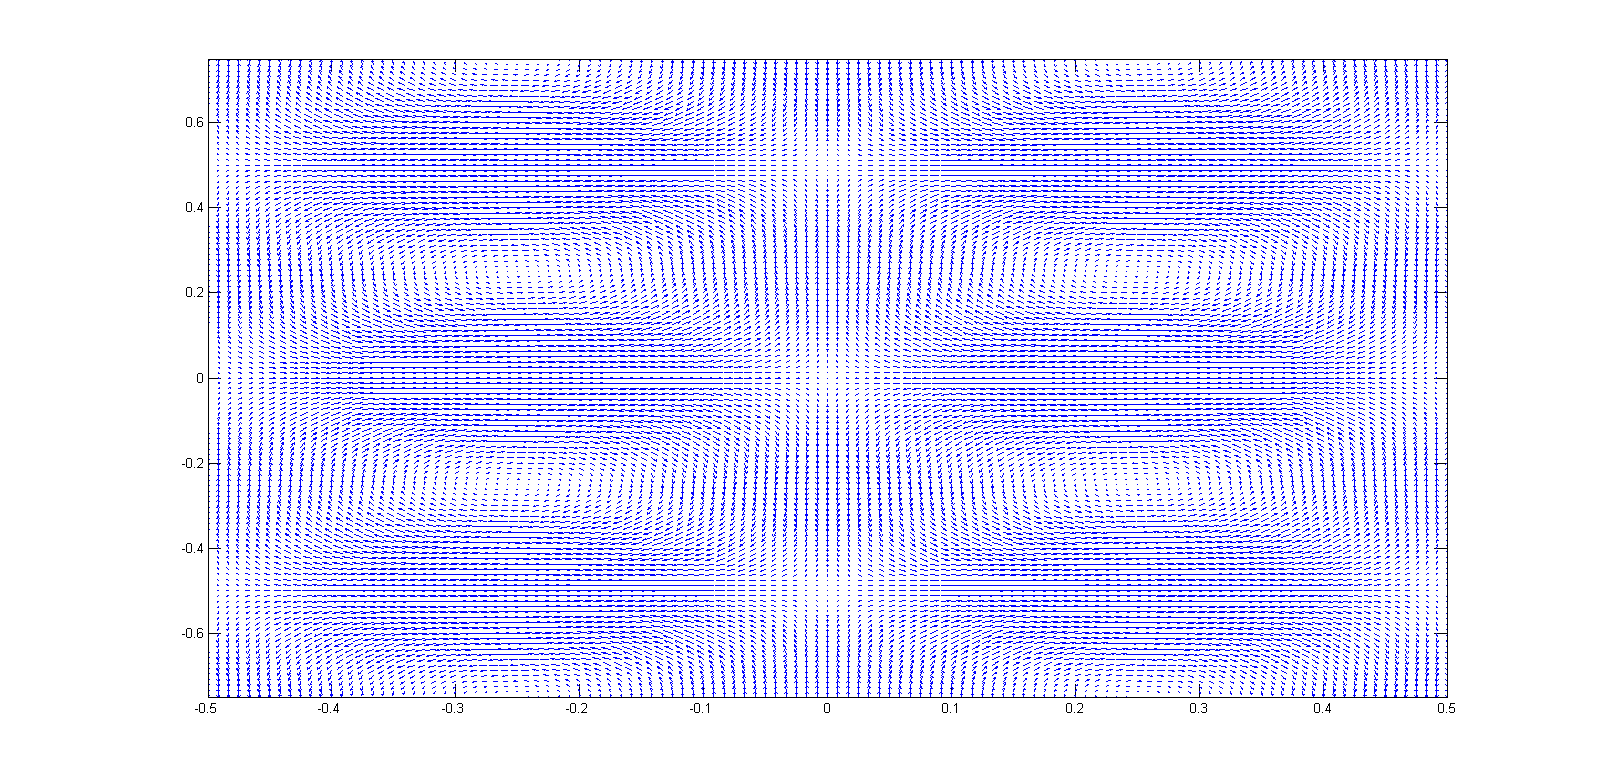 Profil de vitesse en utilisant la fonction meshgrid